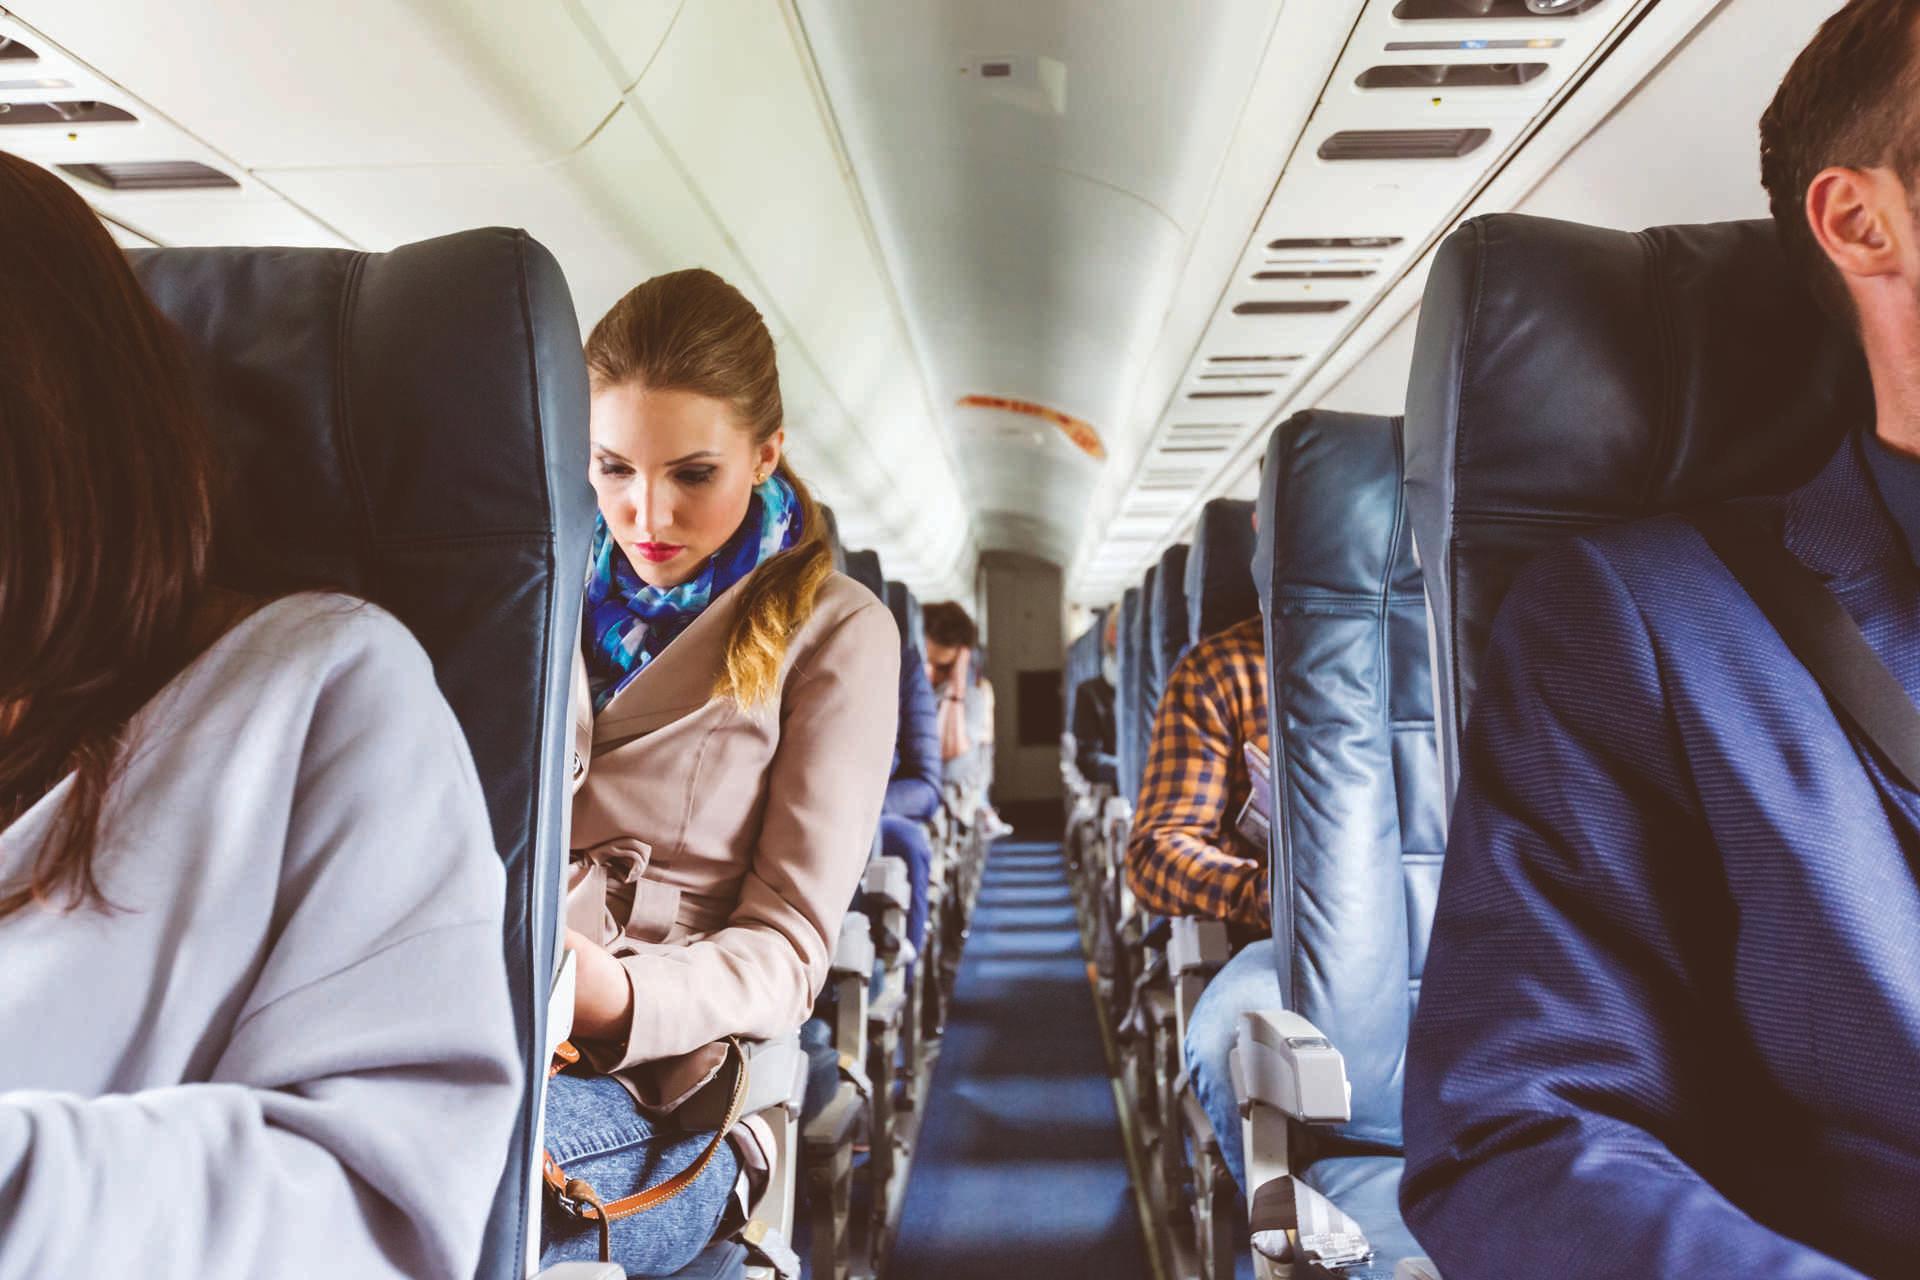 Innenraum eines Flugzeugs mit Menschen, die auf Sitzen sitzen. Passagiere auf dem Sitz während des Fluges.